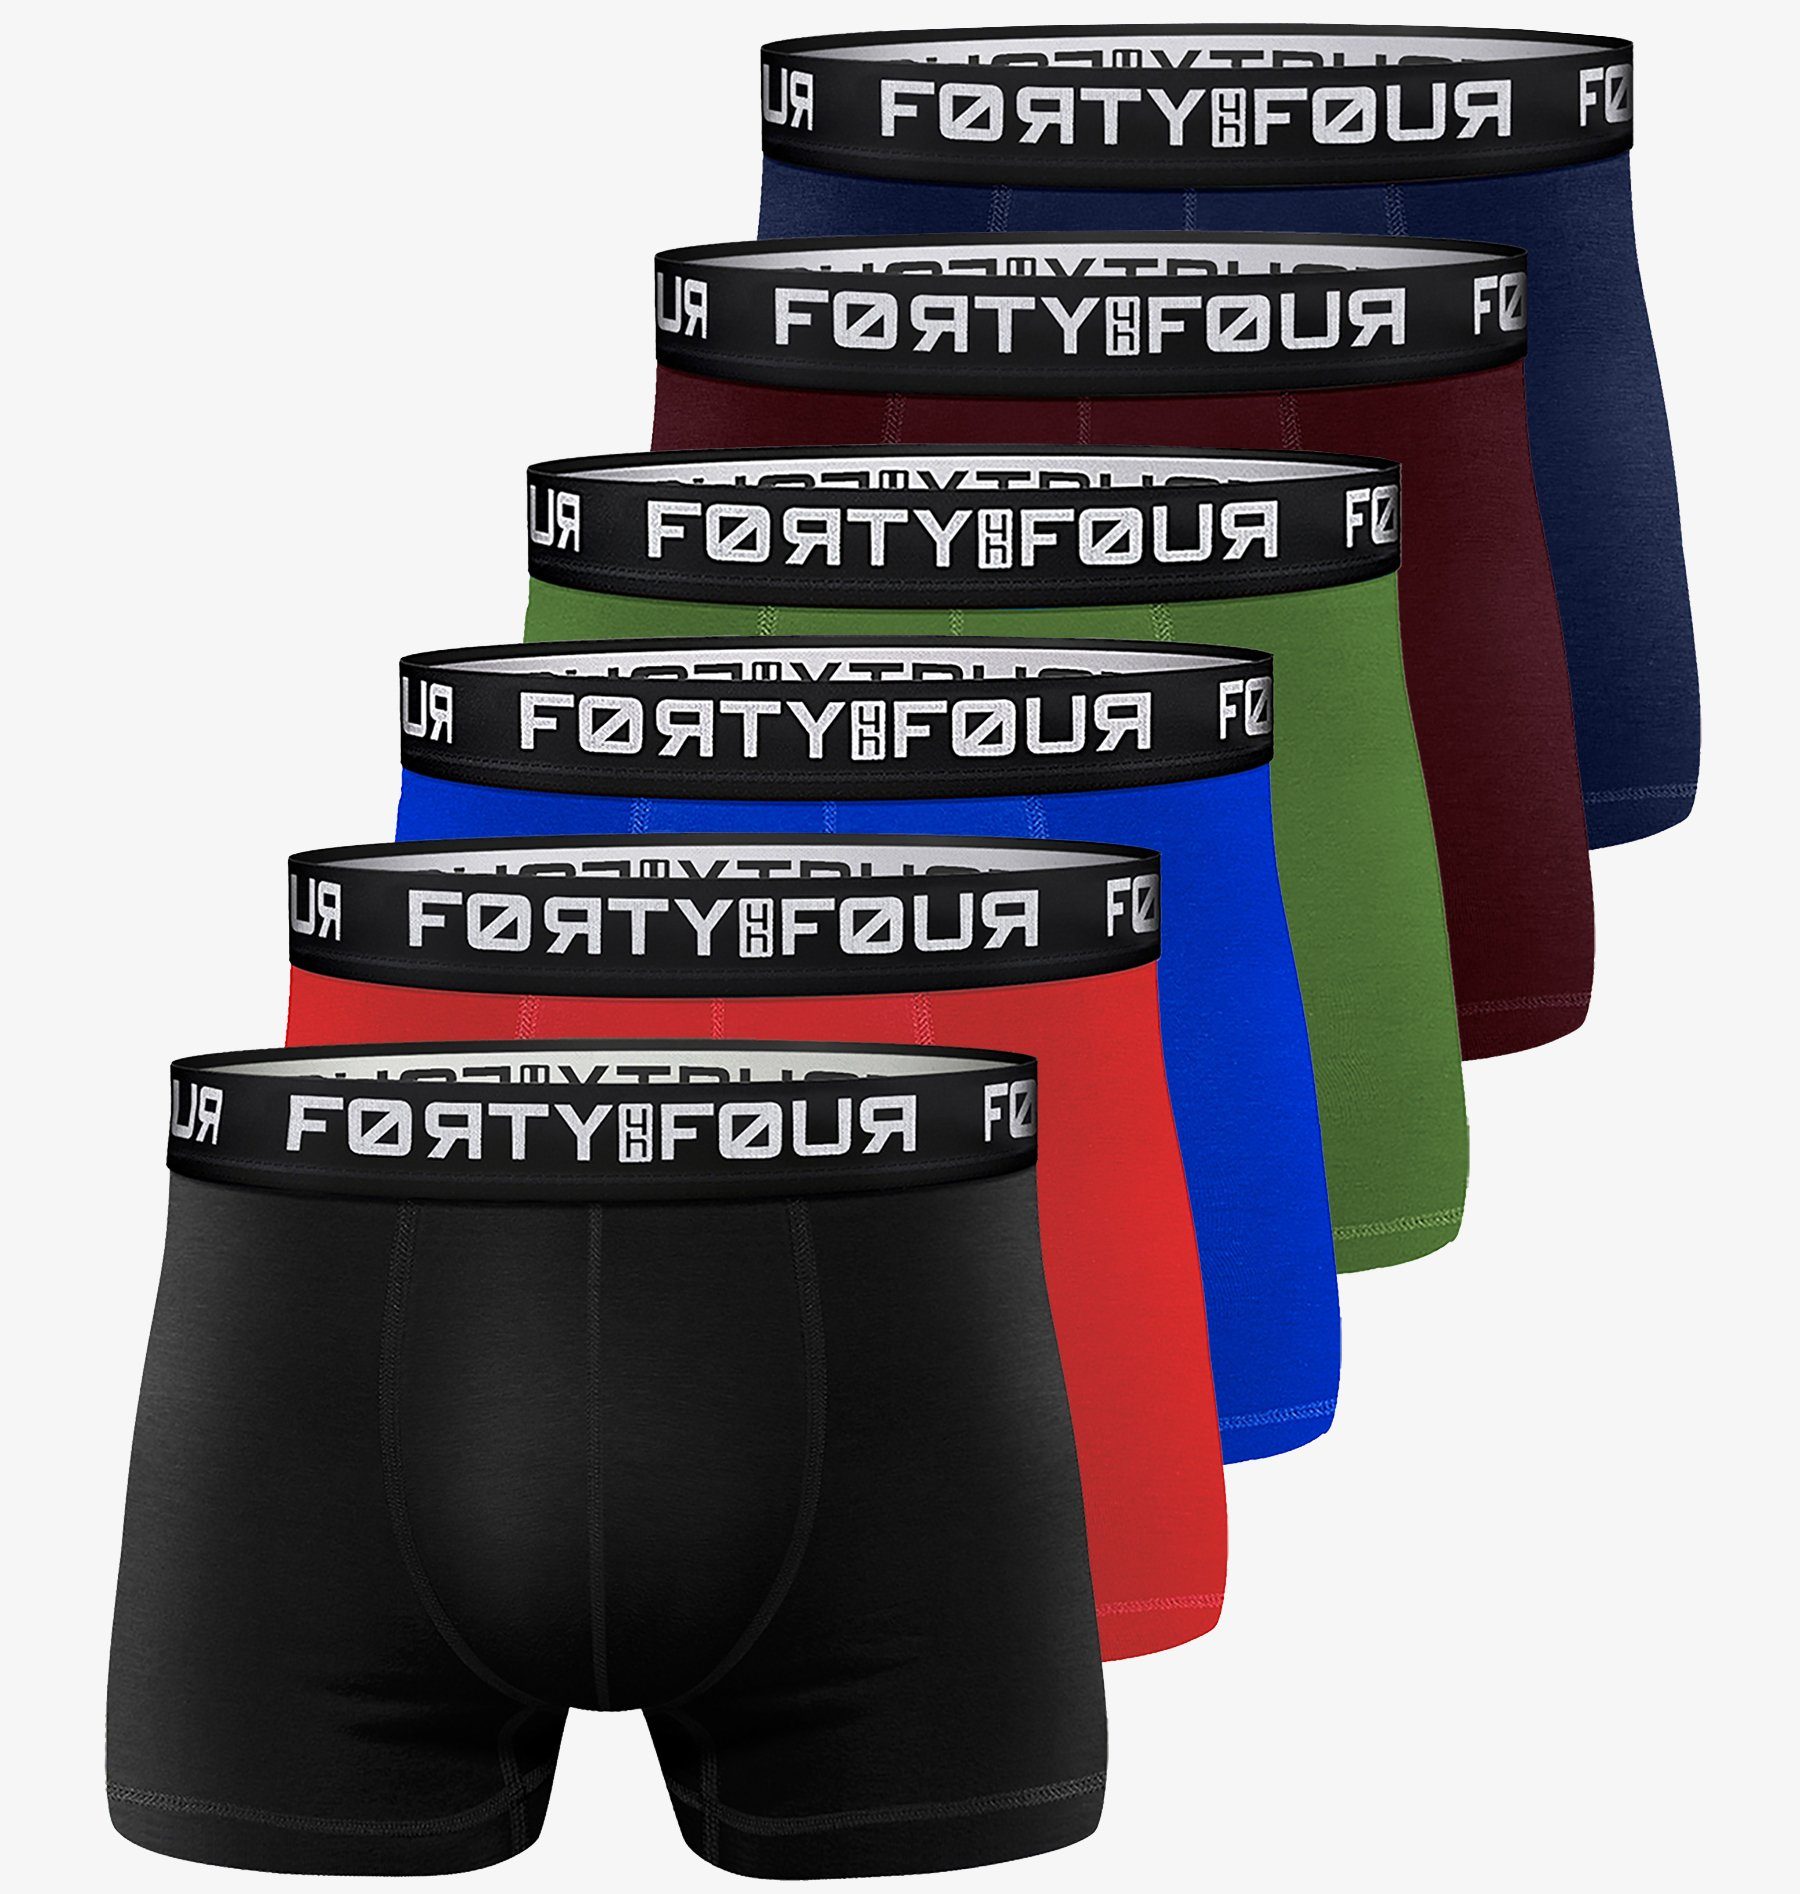 FortyFour Boxershorts Herren Pack) Baumwolle Premium - Unterhosen Qualität Männer 7XL perfekte Passform (Vorteilspack, S 706d-mehrfarbig 6er